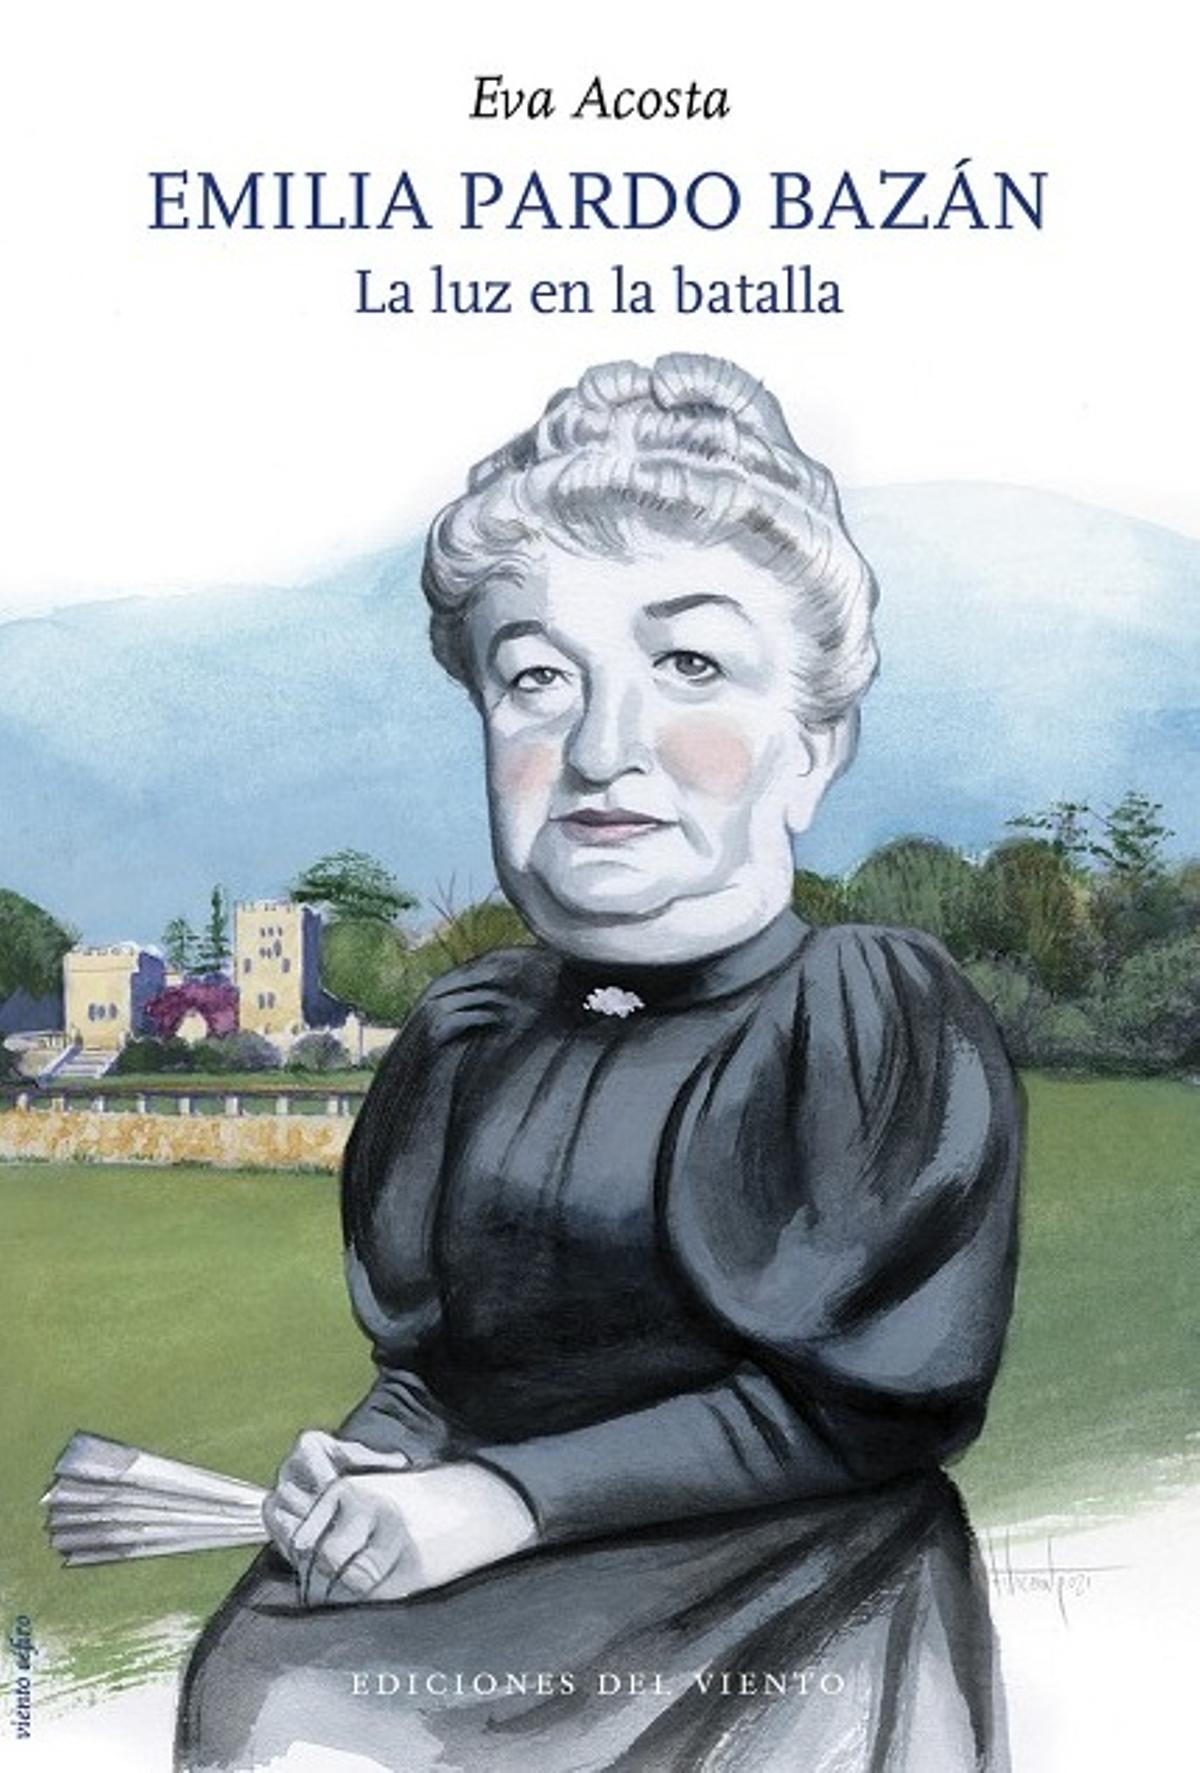 Biografía de Emilia Pardo Bazán.